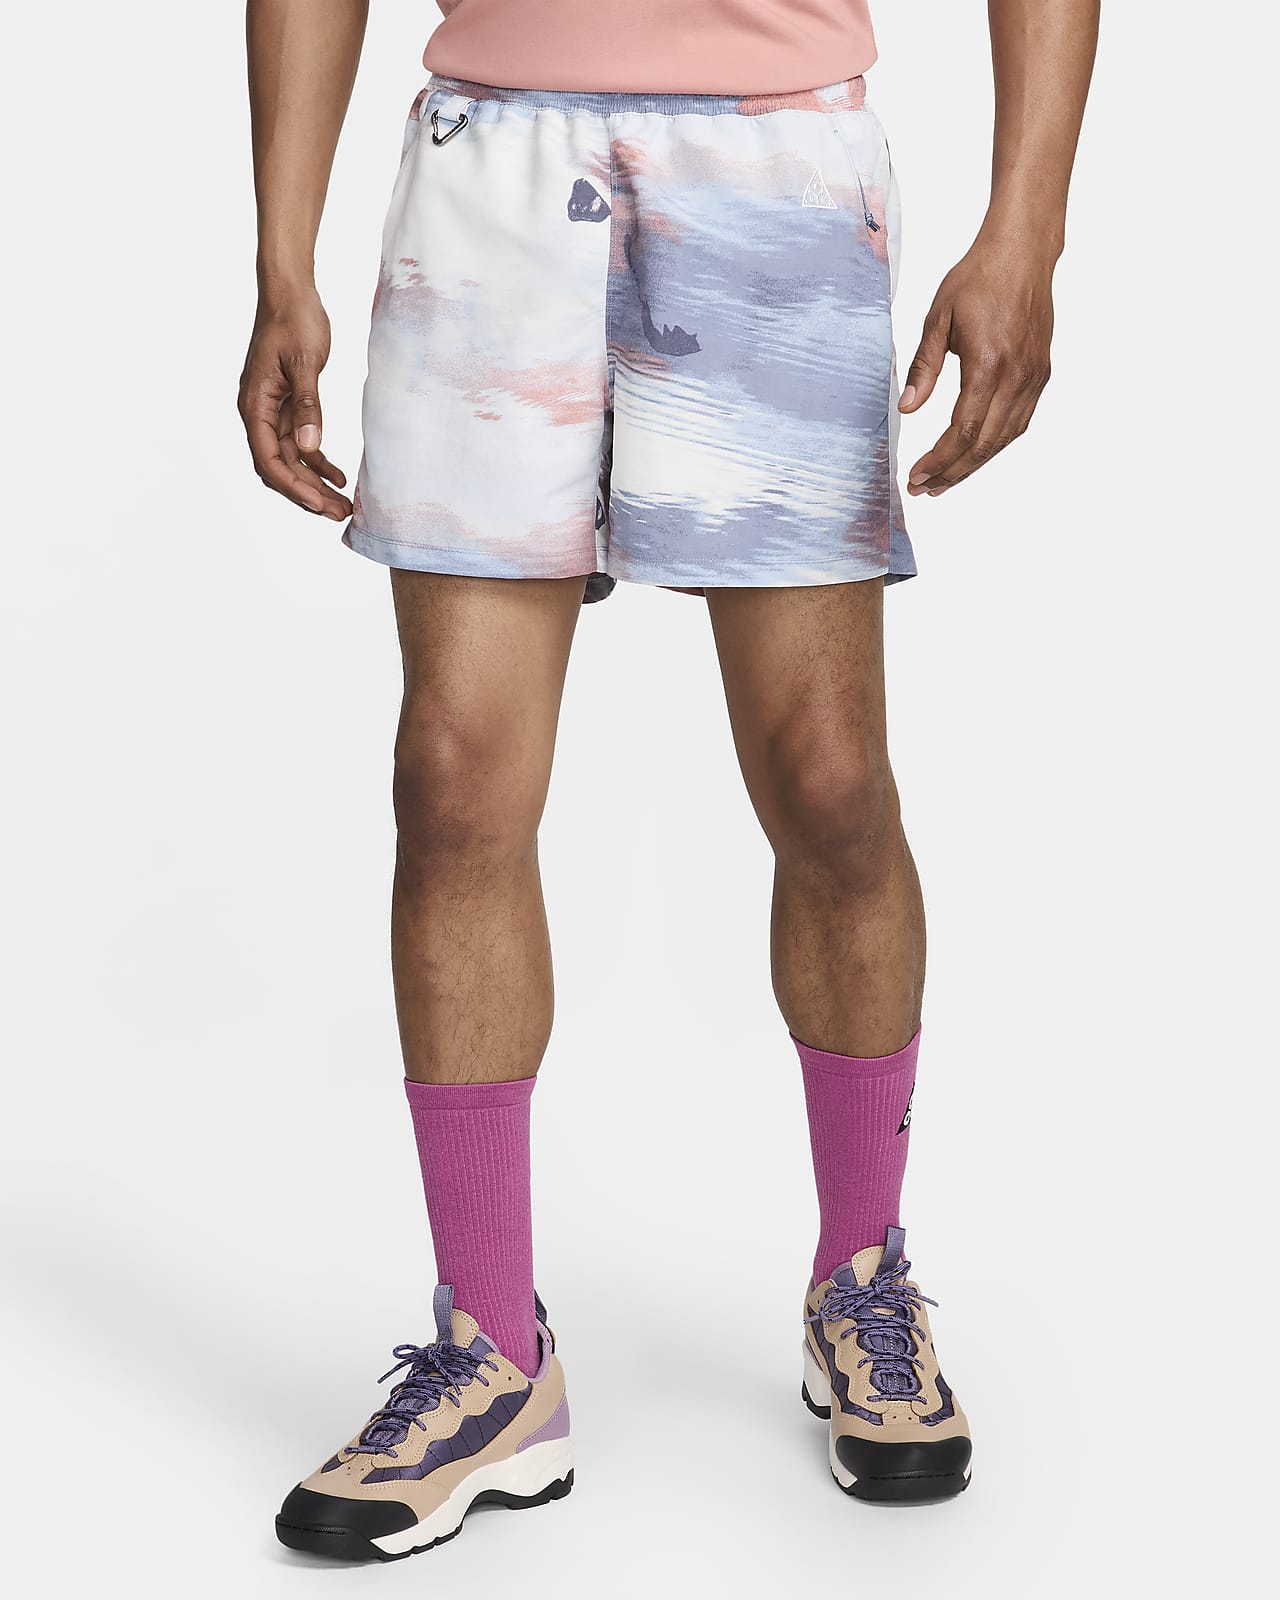 Nike ACG 'Reservoir Goat' Men's All-Over Print Shorts